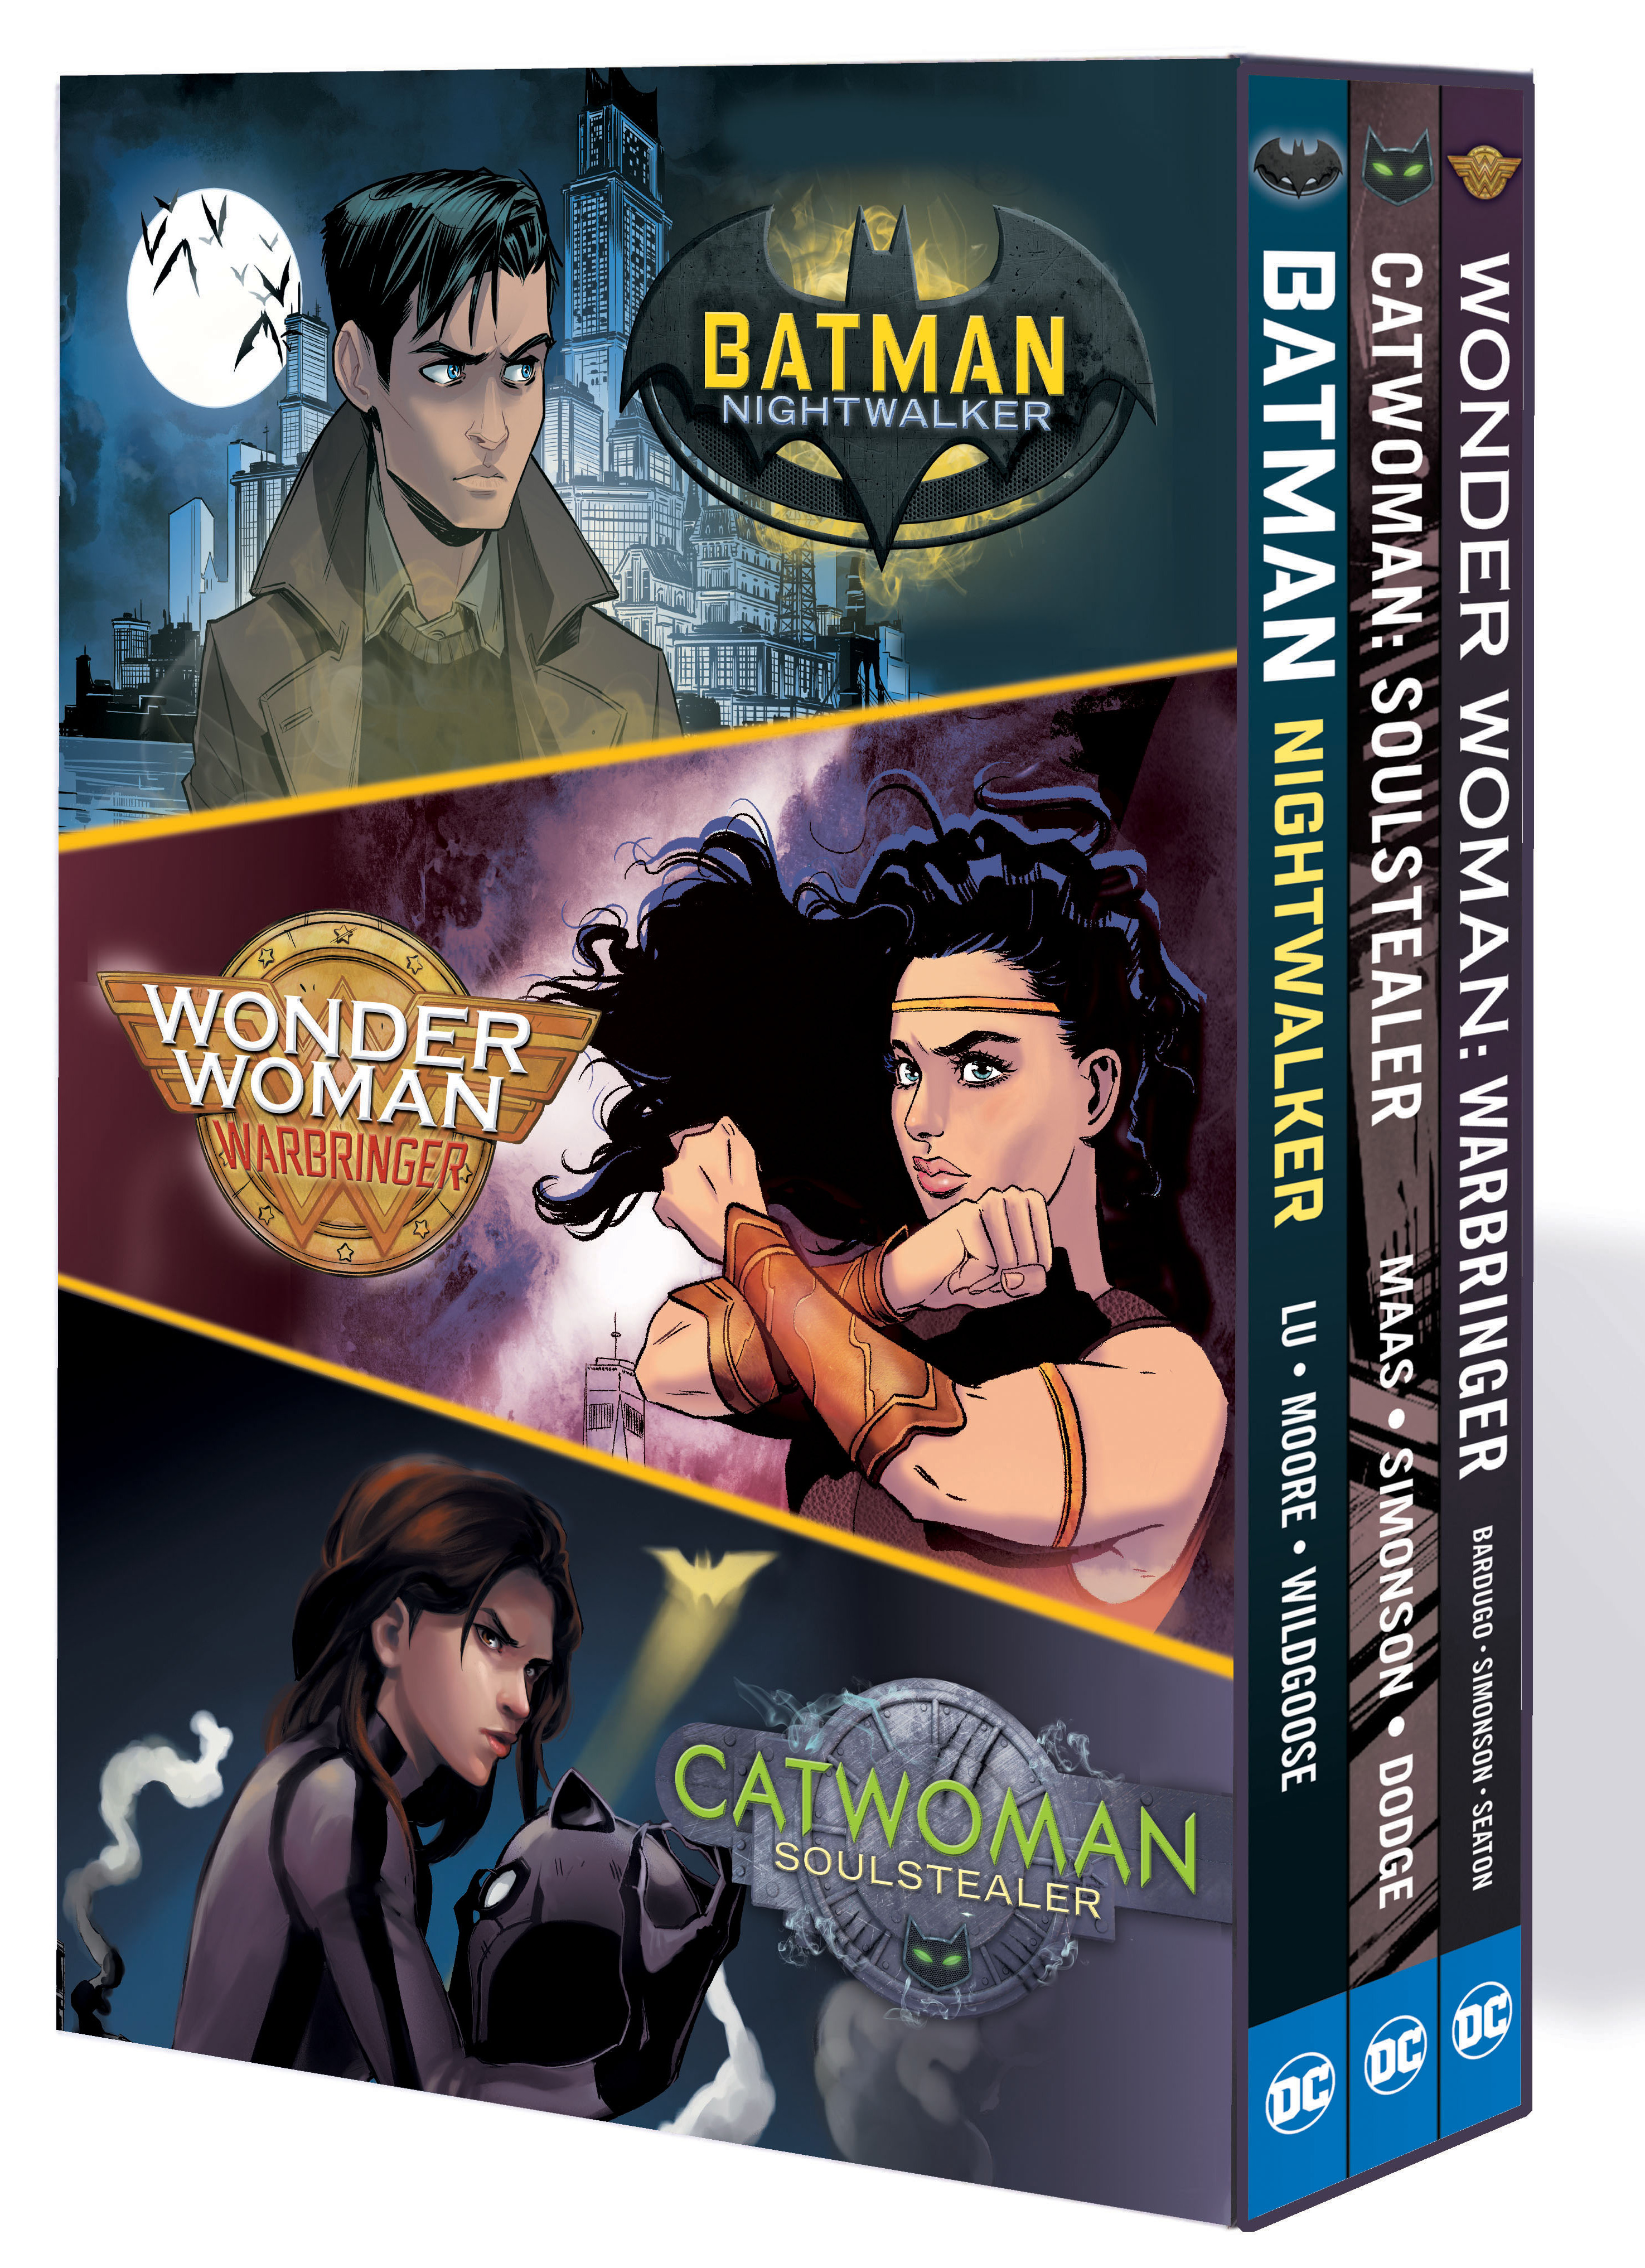 The DC Icons Series: The Graphic Novel Box Set | Lu, Marie (Auteur) | Bardugo, Leigh (Auteur) | Maas, Sarah J. (Auteur) | Simonson, Louise (Auteur) | Various (Illustrateur)